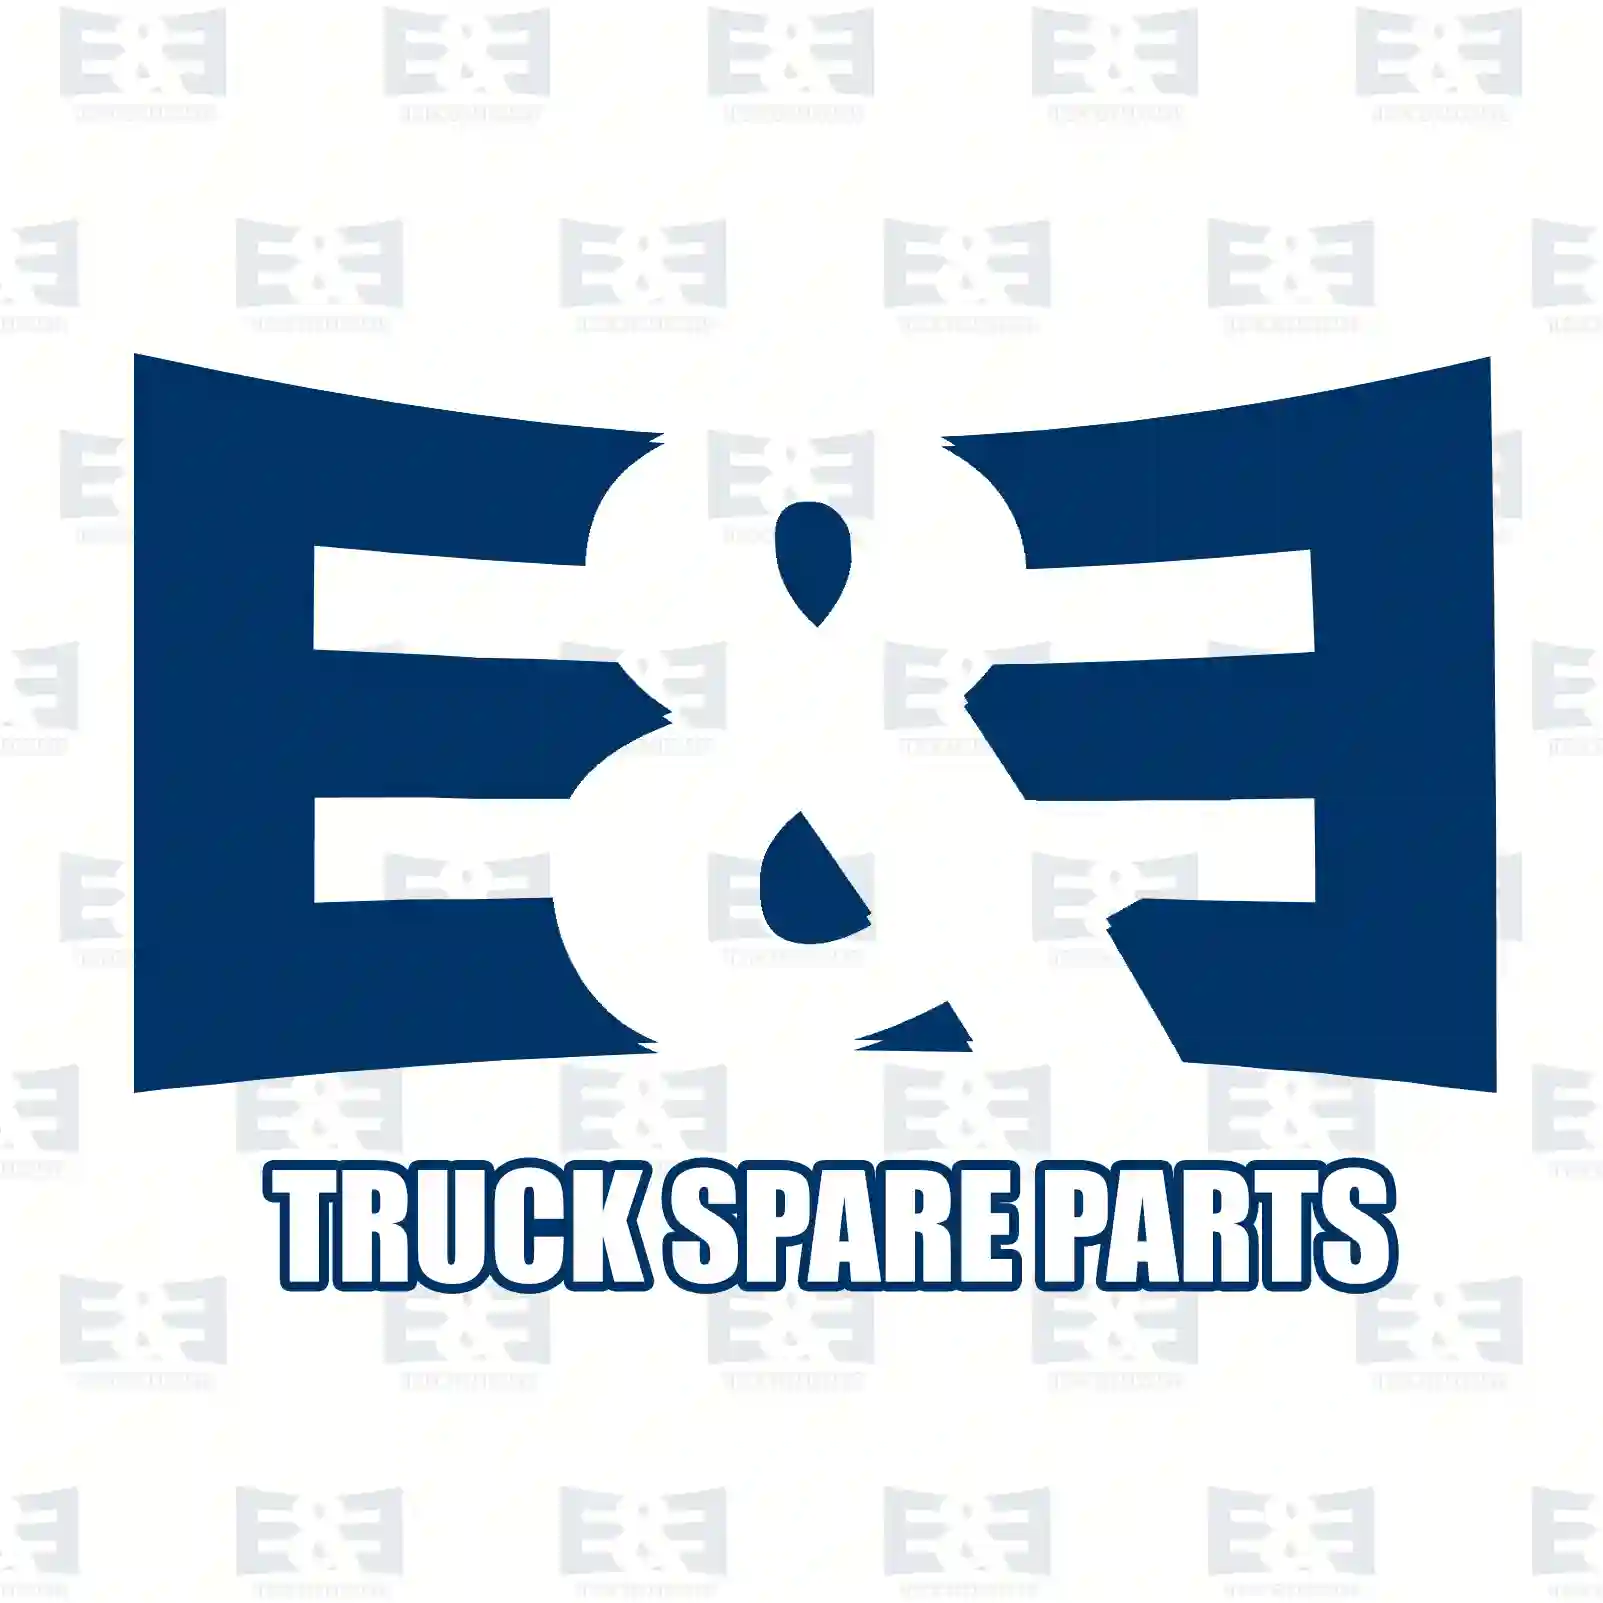 Ball joint, 2E2278508, [] ||  2E2278508 E&E Truck Spare Parts | Truck Spare Parts, Auotomotive Spare Parts Ball joint, 2E2278508, [] ||  2E2278508 E&E Truck Spare Parts | Truck Spare Parts, Auotomotive Spare Parts